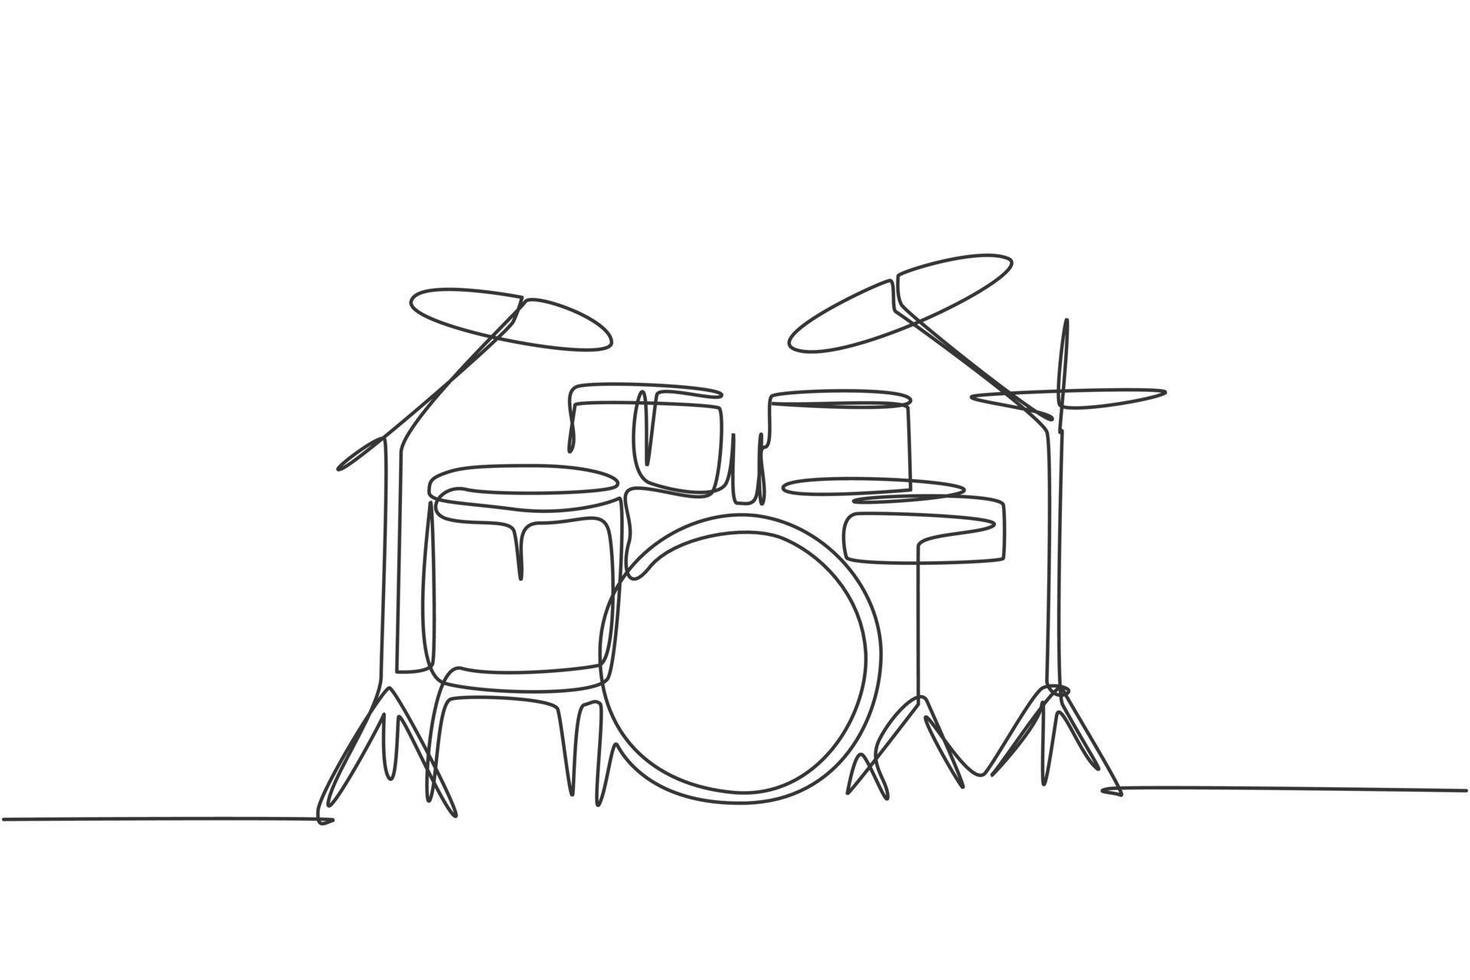 één enkele lijntekening van drumbandset. percussie muziekinstrumenten concept. trendy ononderbroken lijntekening ontwerp grafische vectorillustratie vector